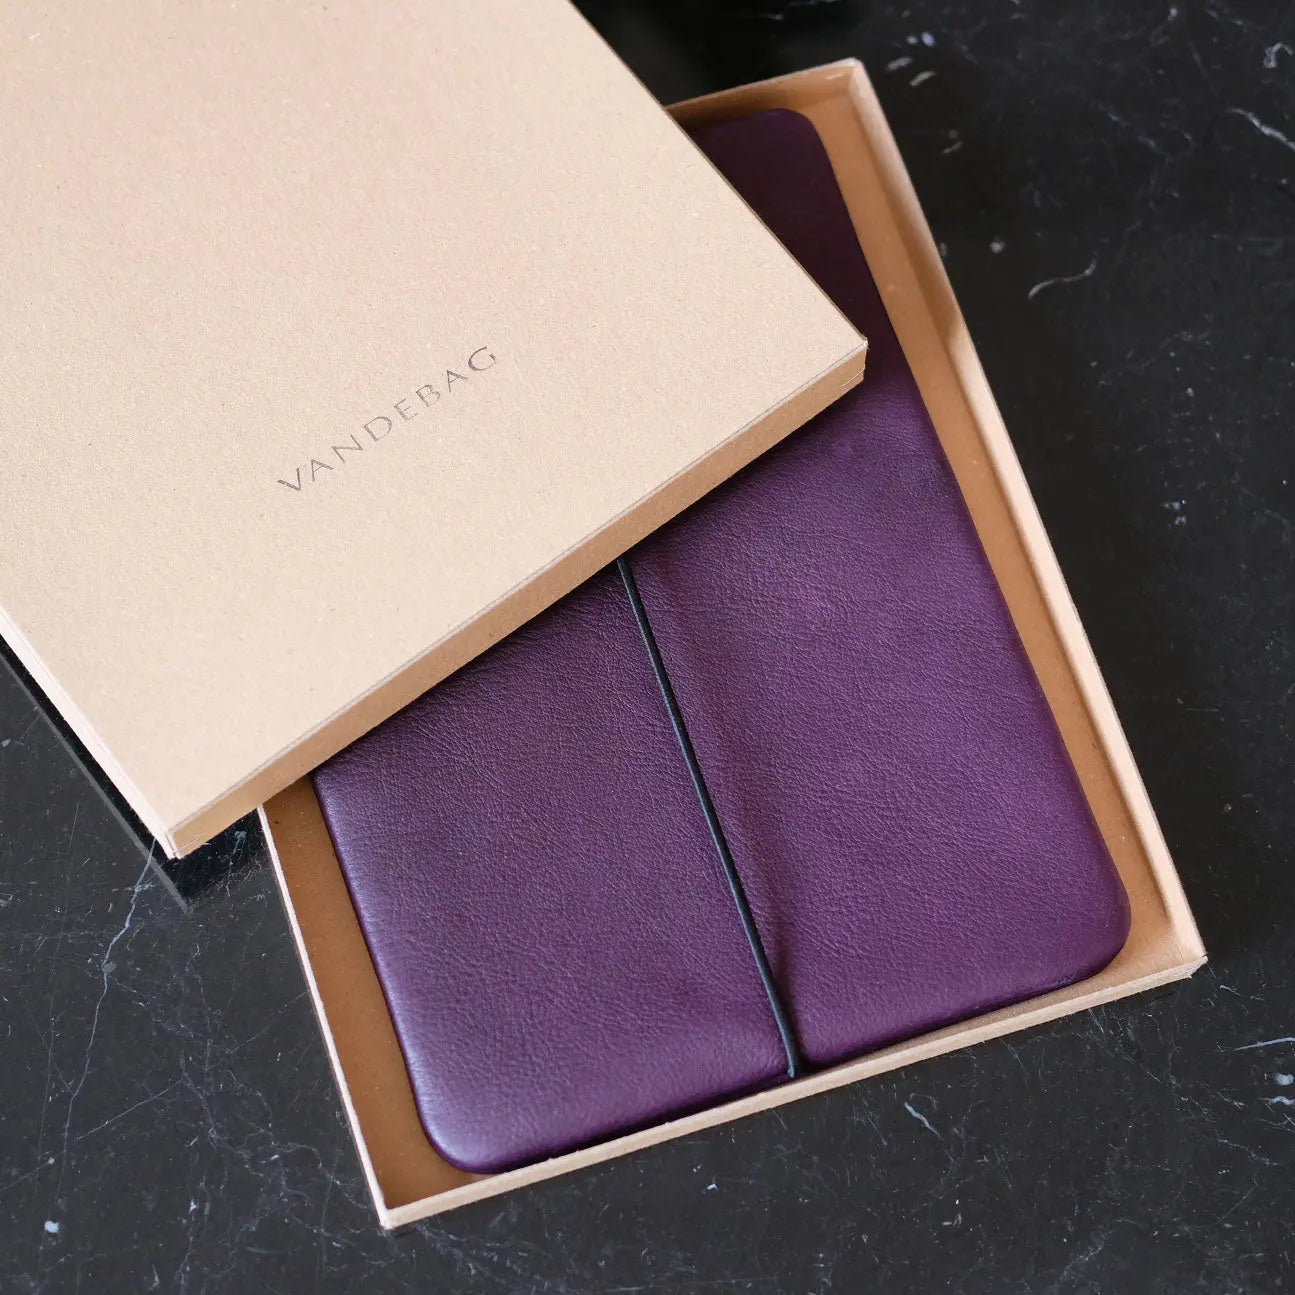 iPadhülle aus lila Nappaleder liegt in einem Geschenkkarton auf einem schwarzen Marmortisch